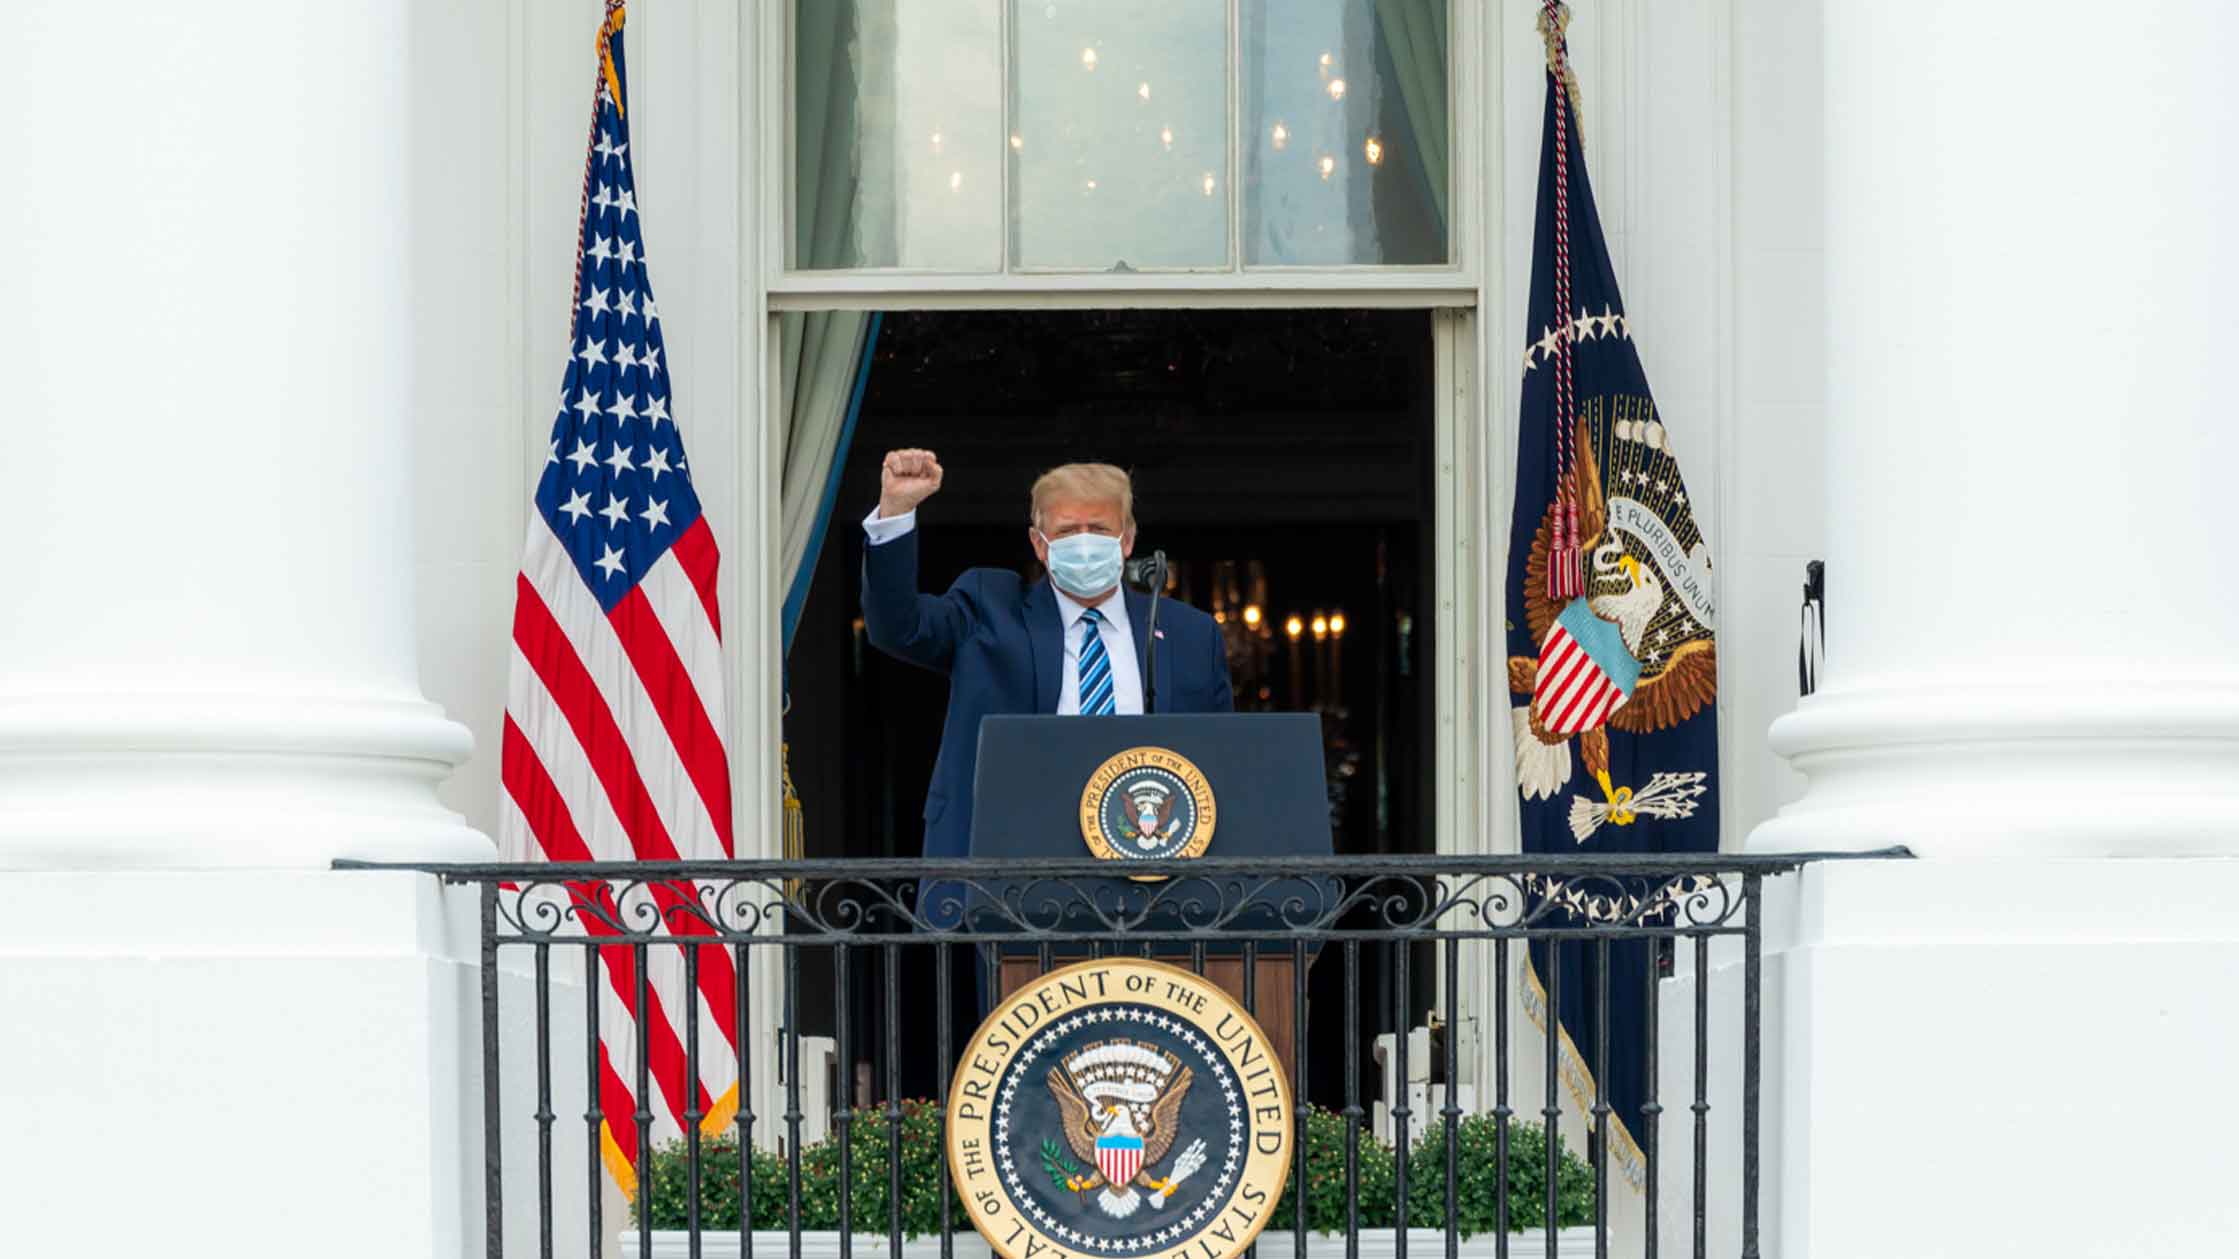 Дексаметазон, входящий в курс лечения президента США, способен превратить человека в параноика или одержимого, считают эксперты Фото: © GLOBAL LOOK press / shealah_craighead